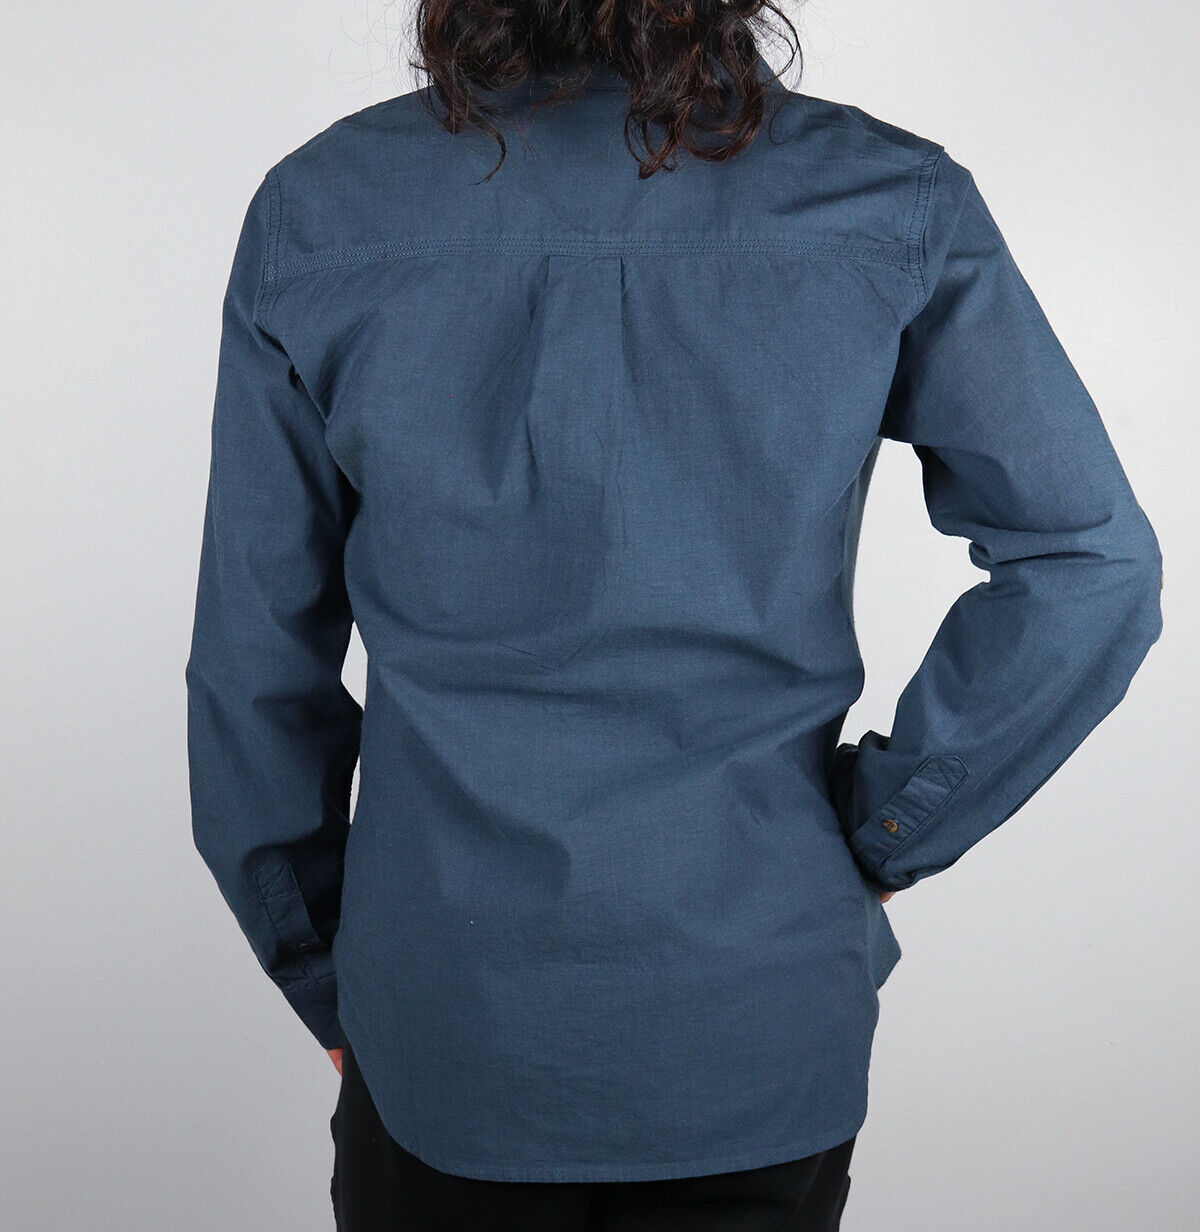 Carhartt Women's Prussian Blue L/S Woven Shirt (209)